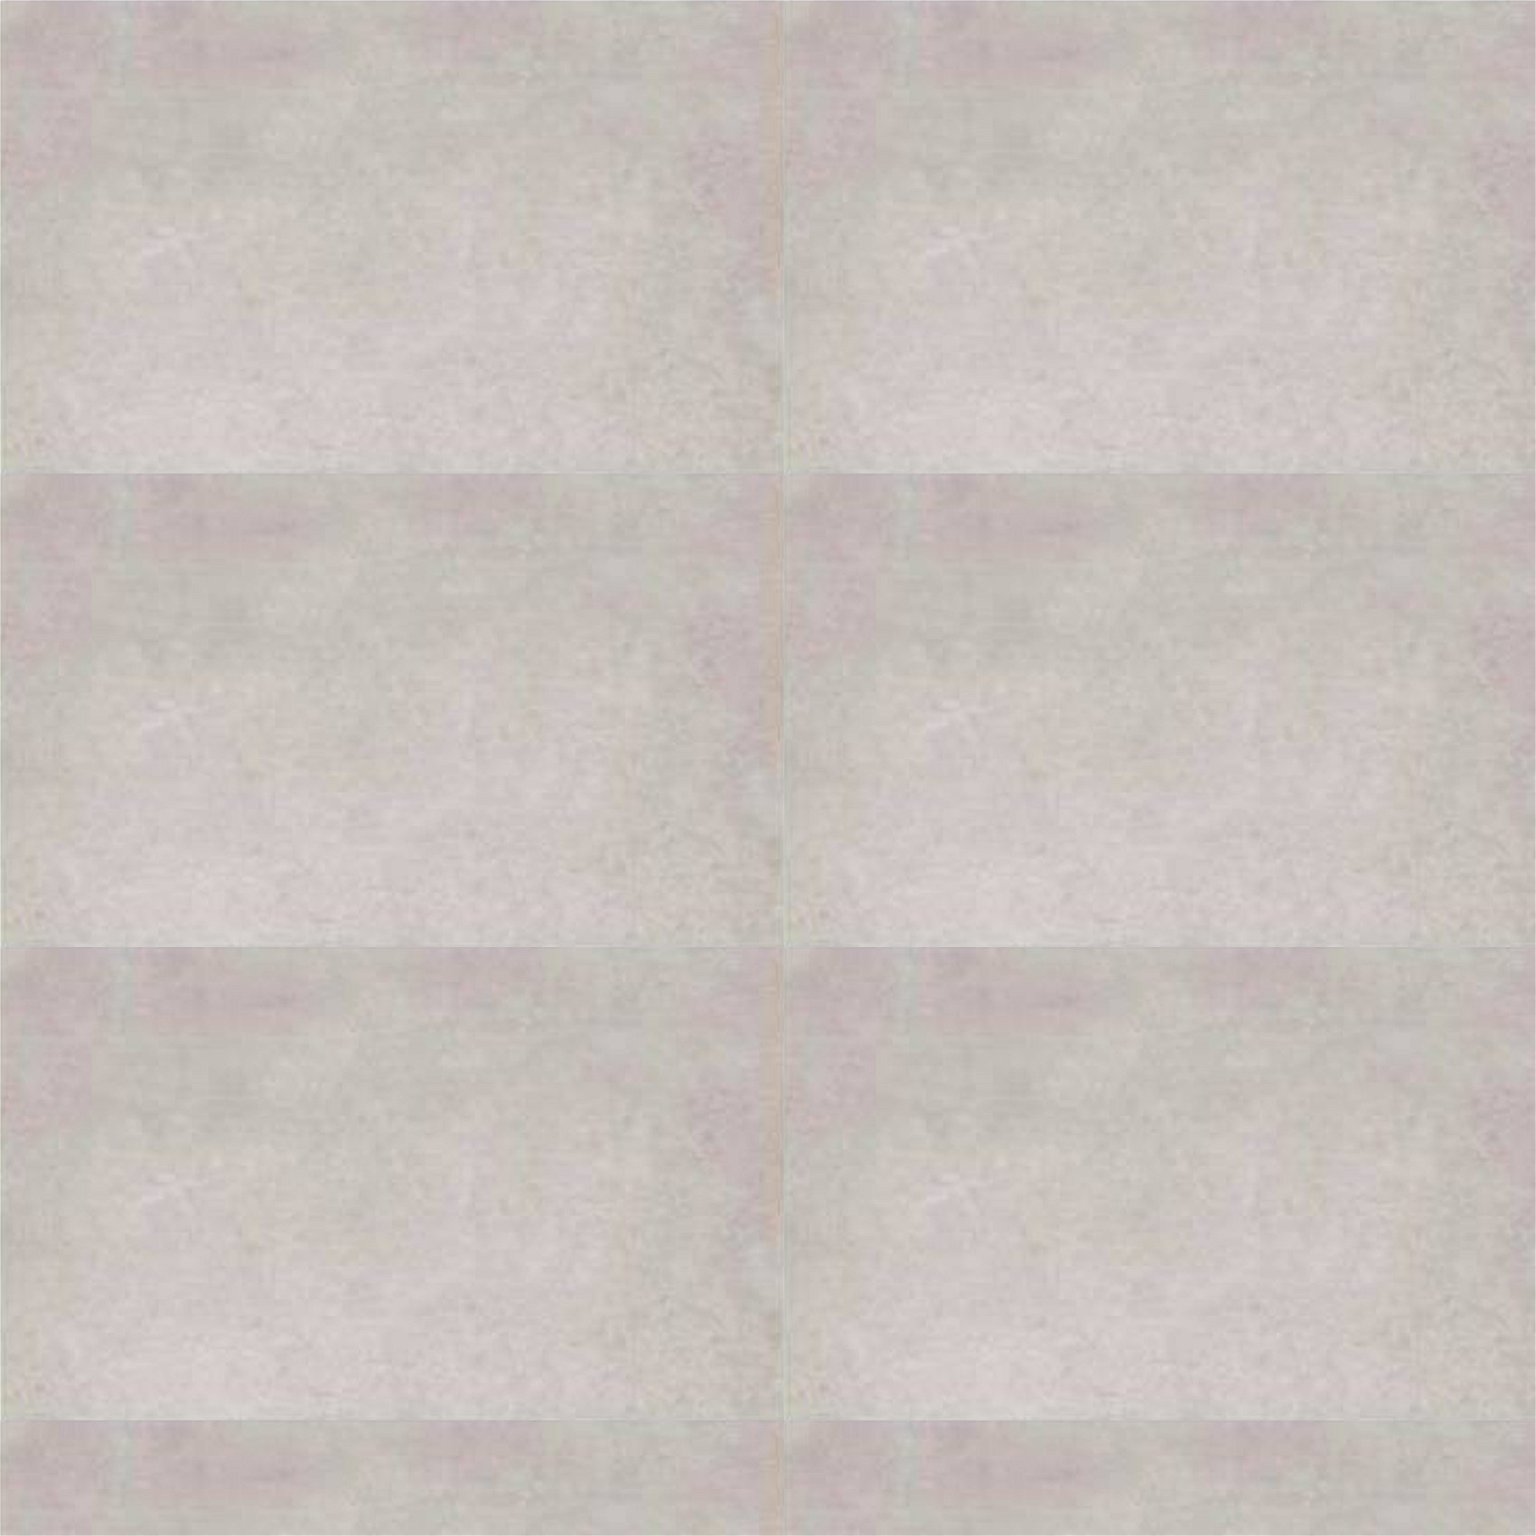 Keraminės sienų plytelės MAINE GRIS, 33,3 x 55 cm - 1